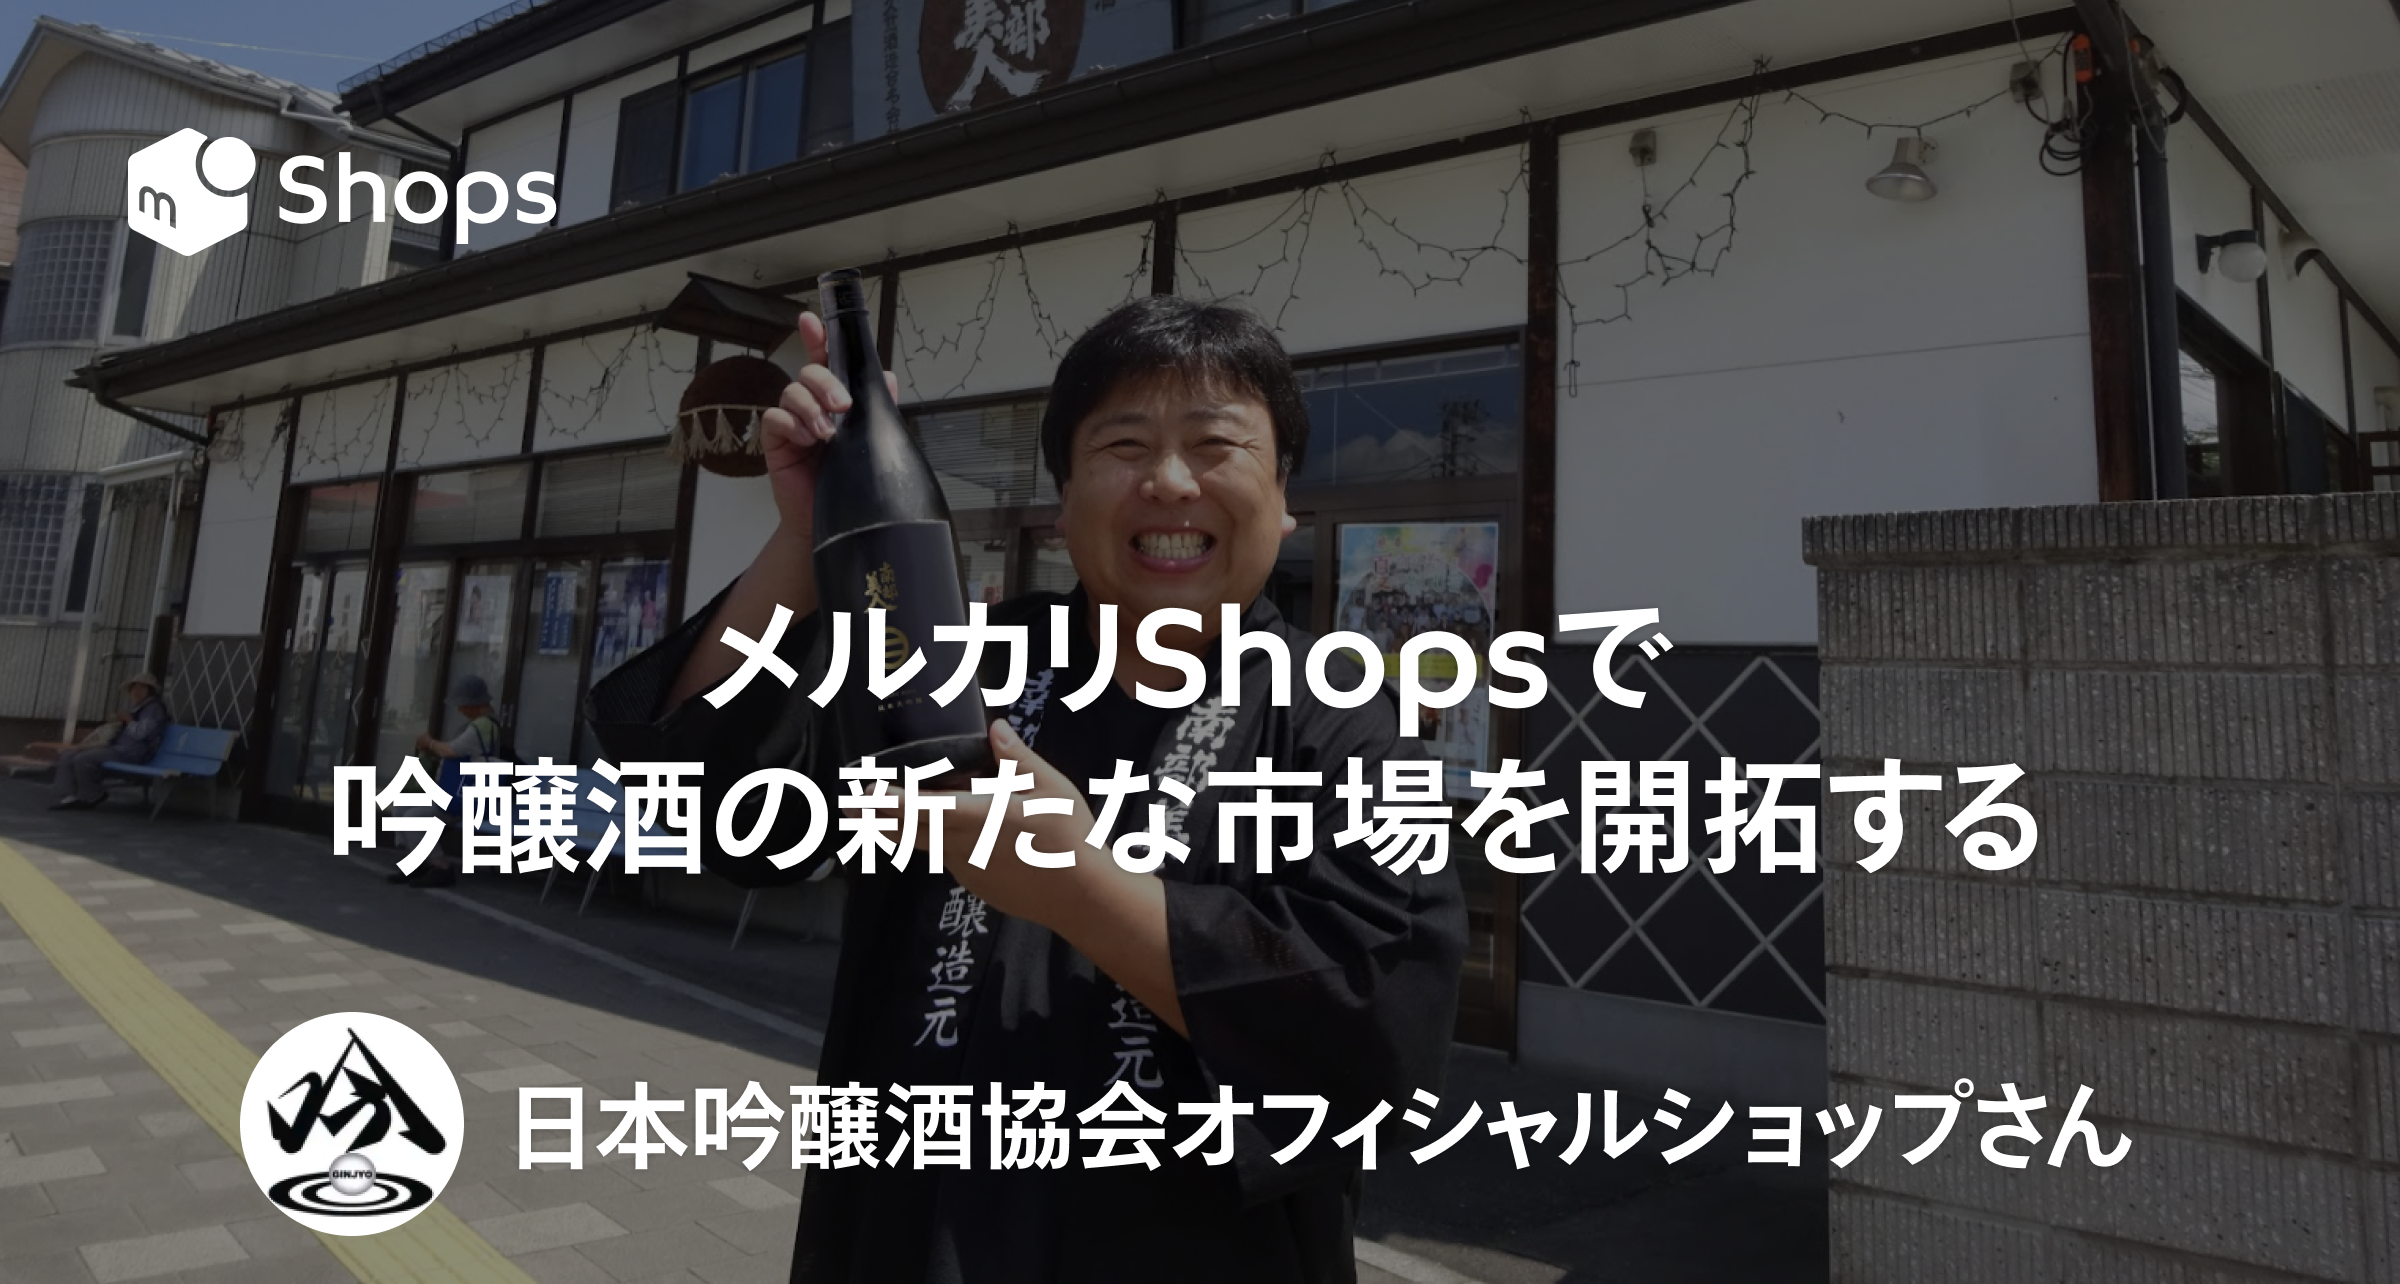 メルカリShopsで吟醸酒の新たな市場を開拓する。「日本吟醸酒協会オフィシャルショップ」さん